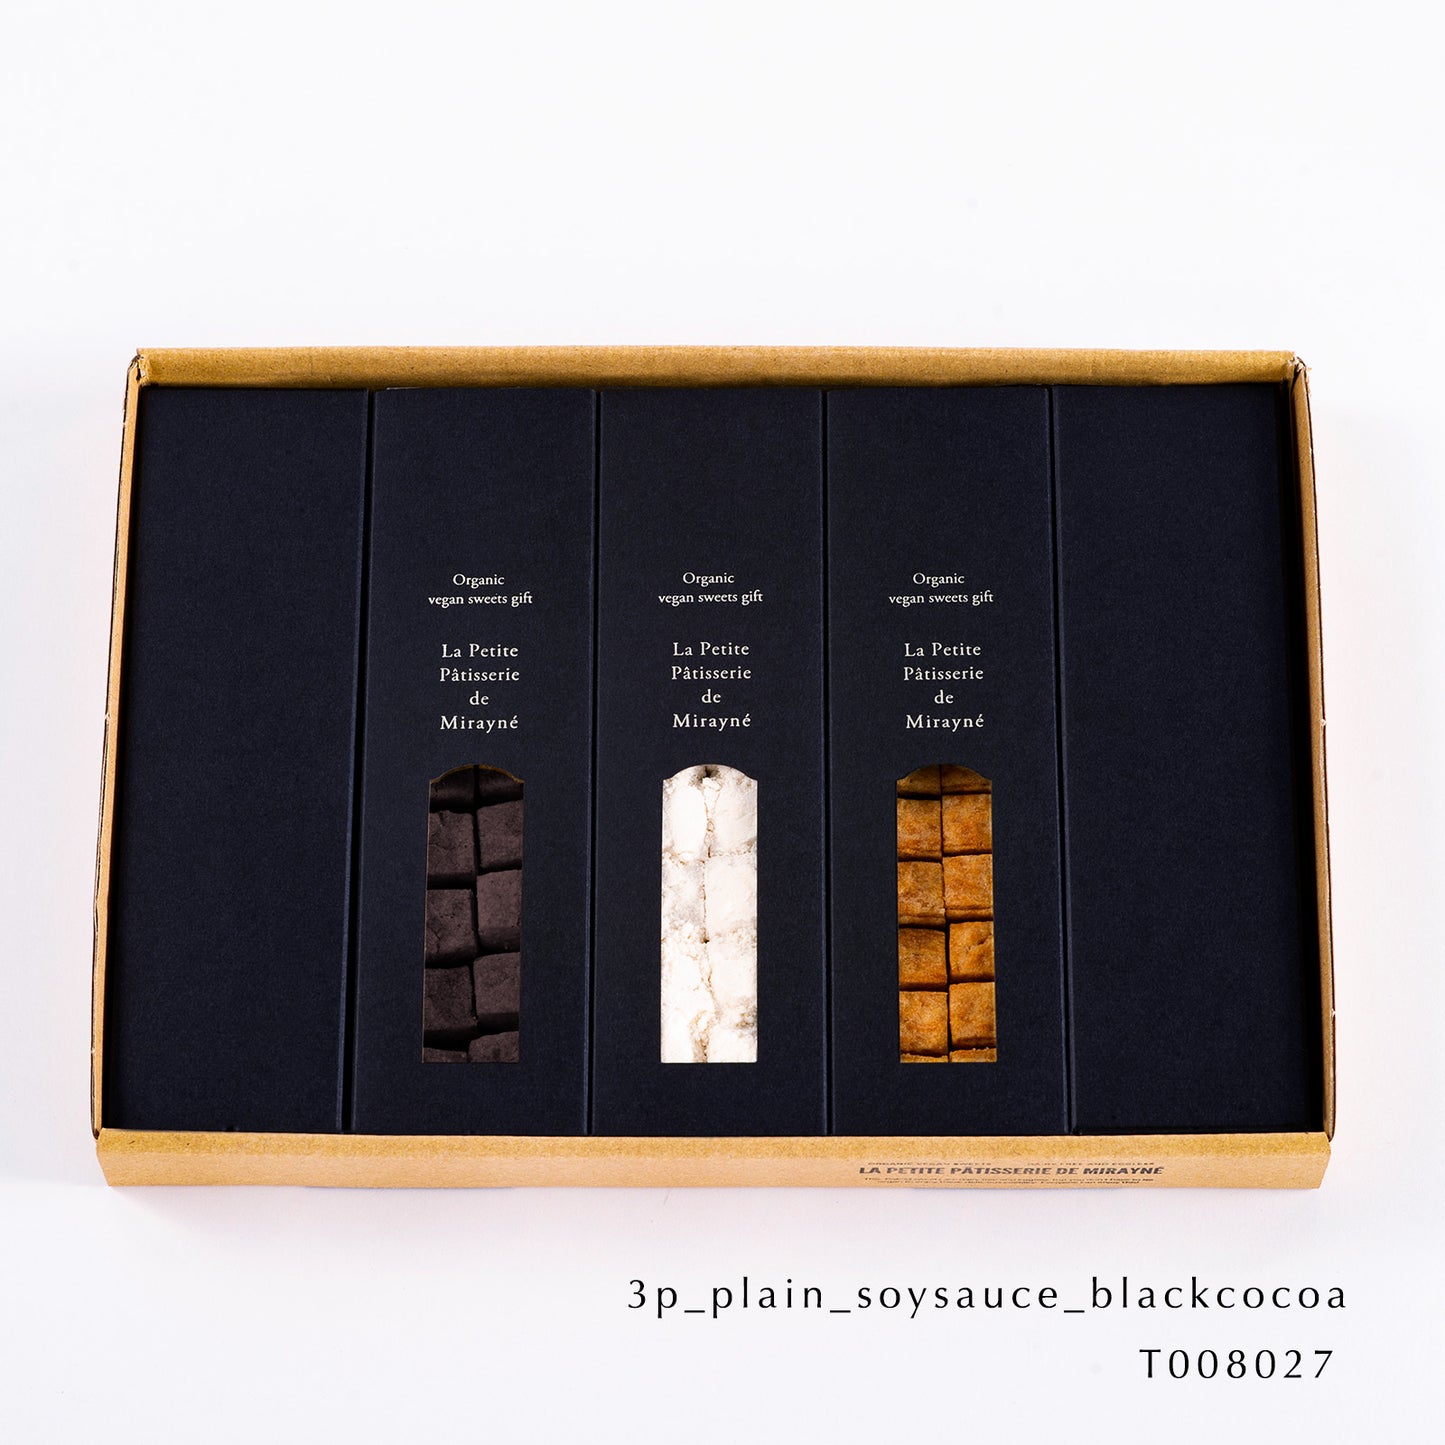 3p_plain_soysauce_blackcocoa